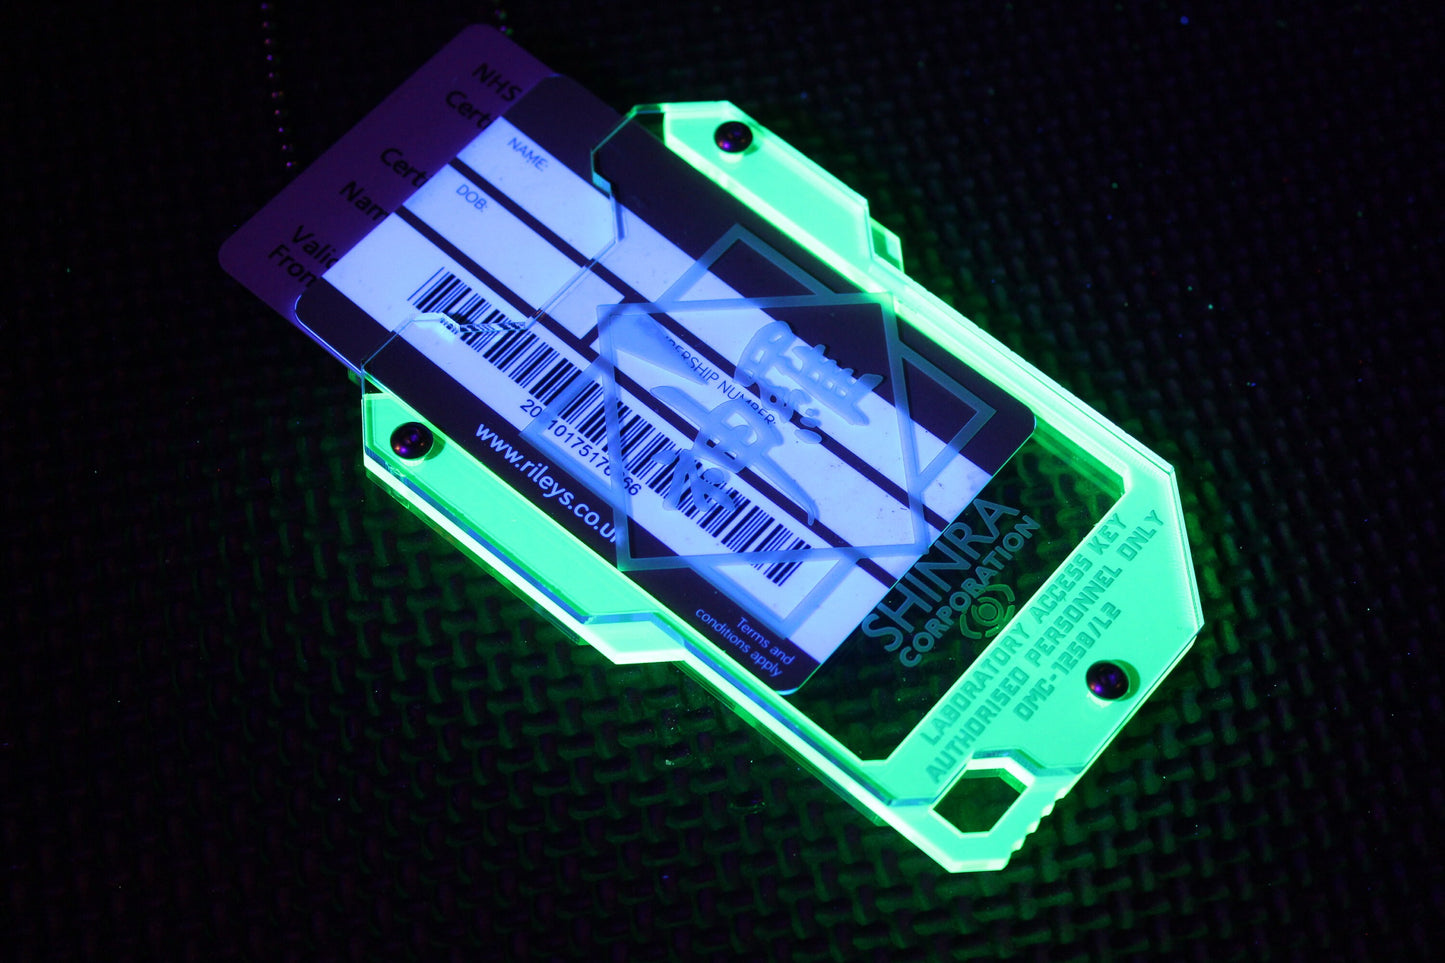 Cyberpunk Shinra corp keycard style card ID holder